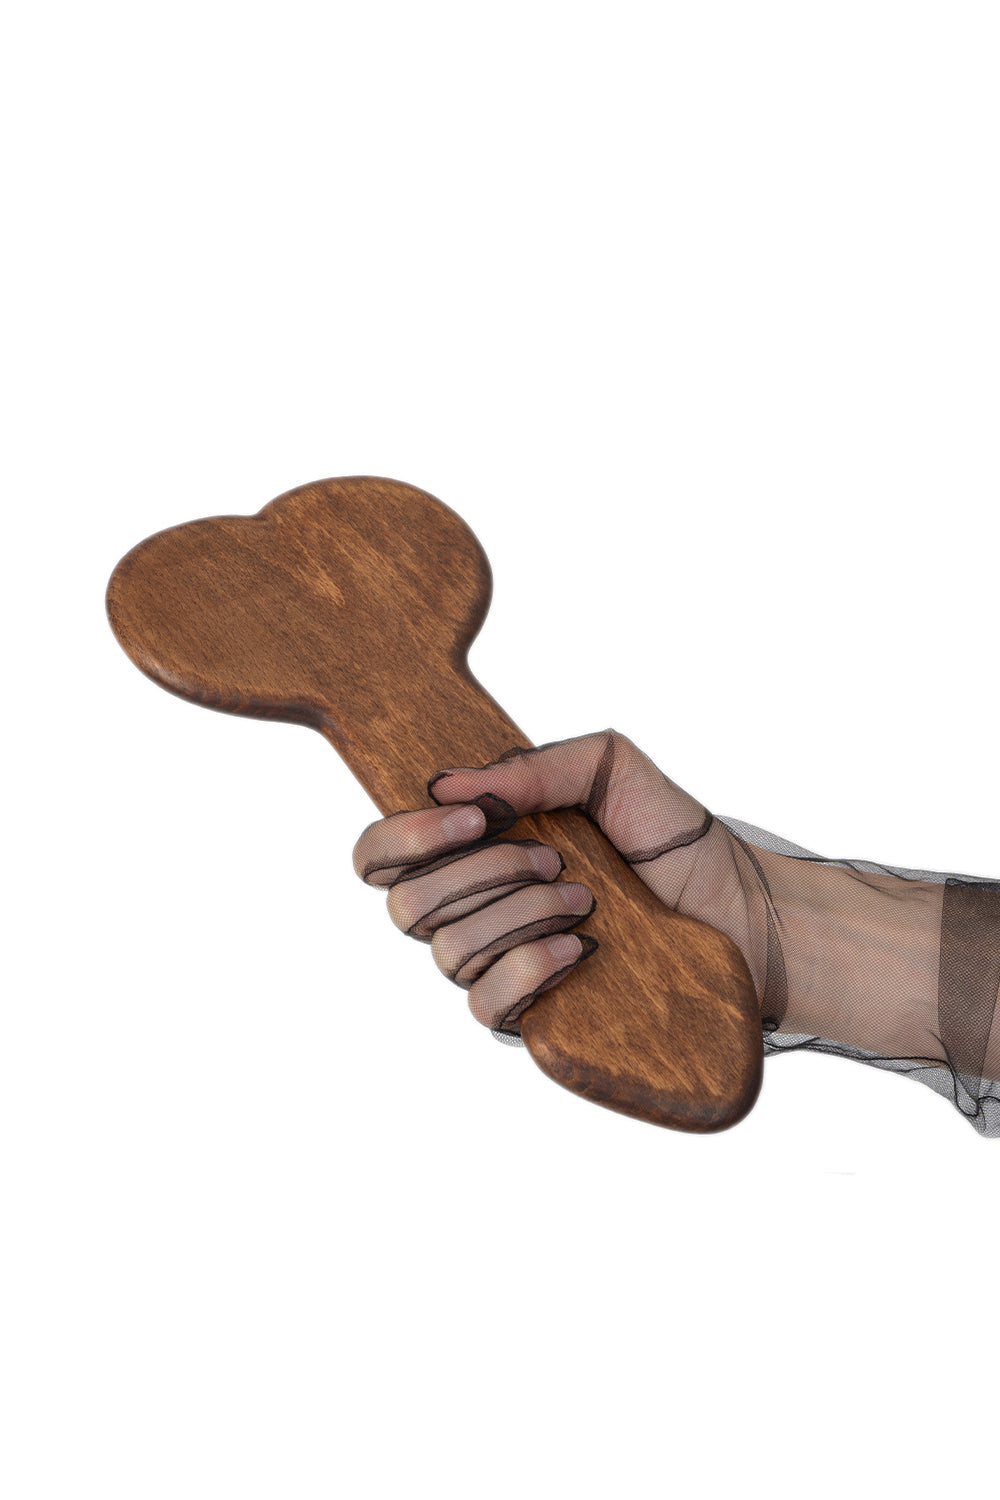 Wooden Paddle - BDSM Spanking Punishment Fetish Paddle